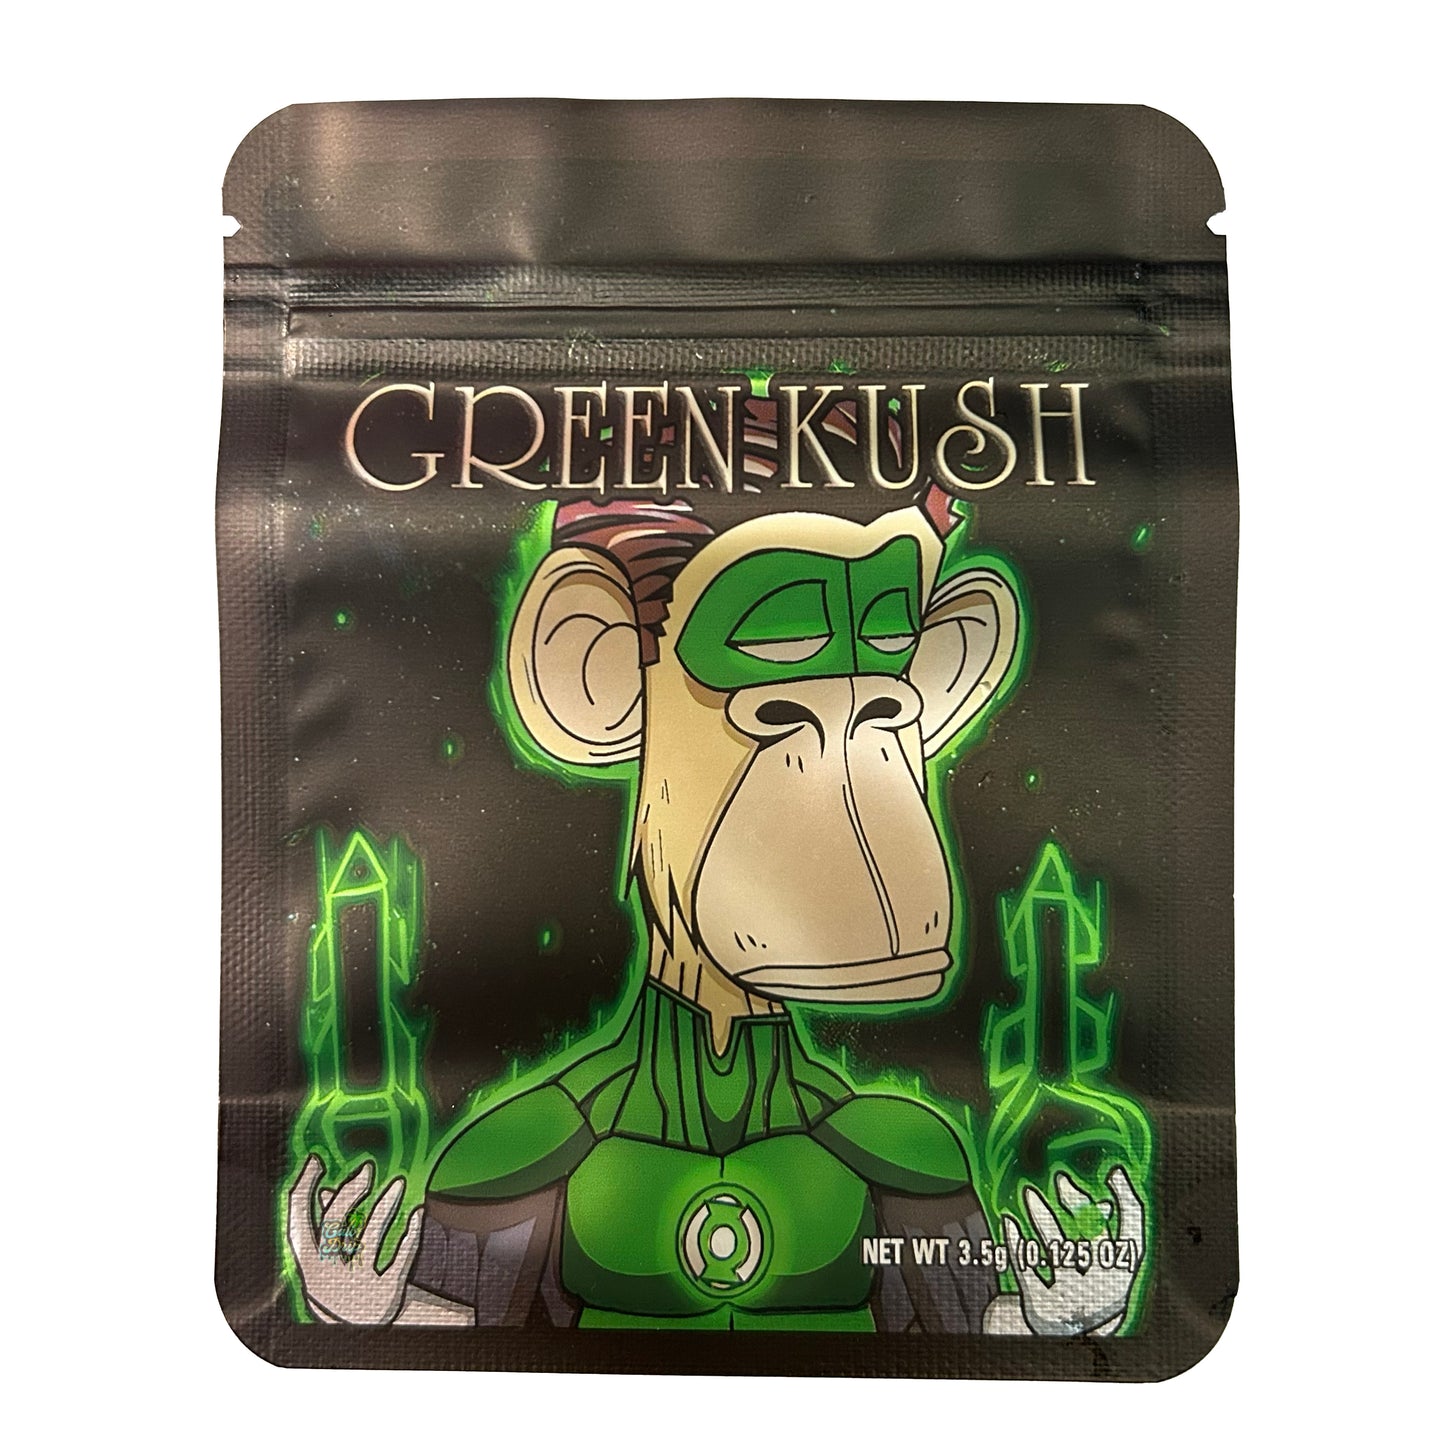 Green Kush Monkey 3.5G Mylar Bags